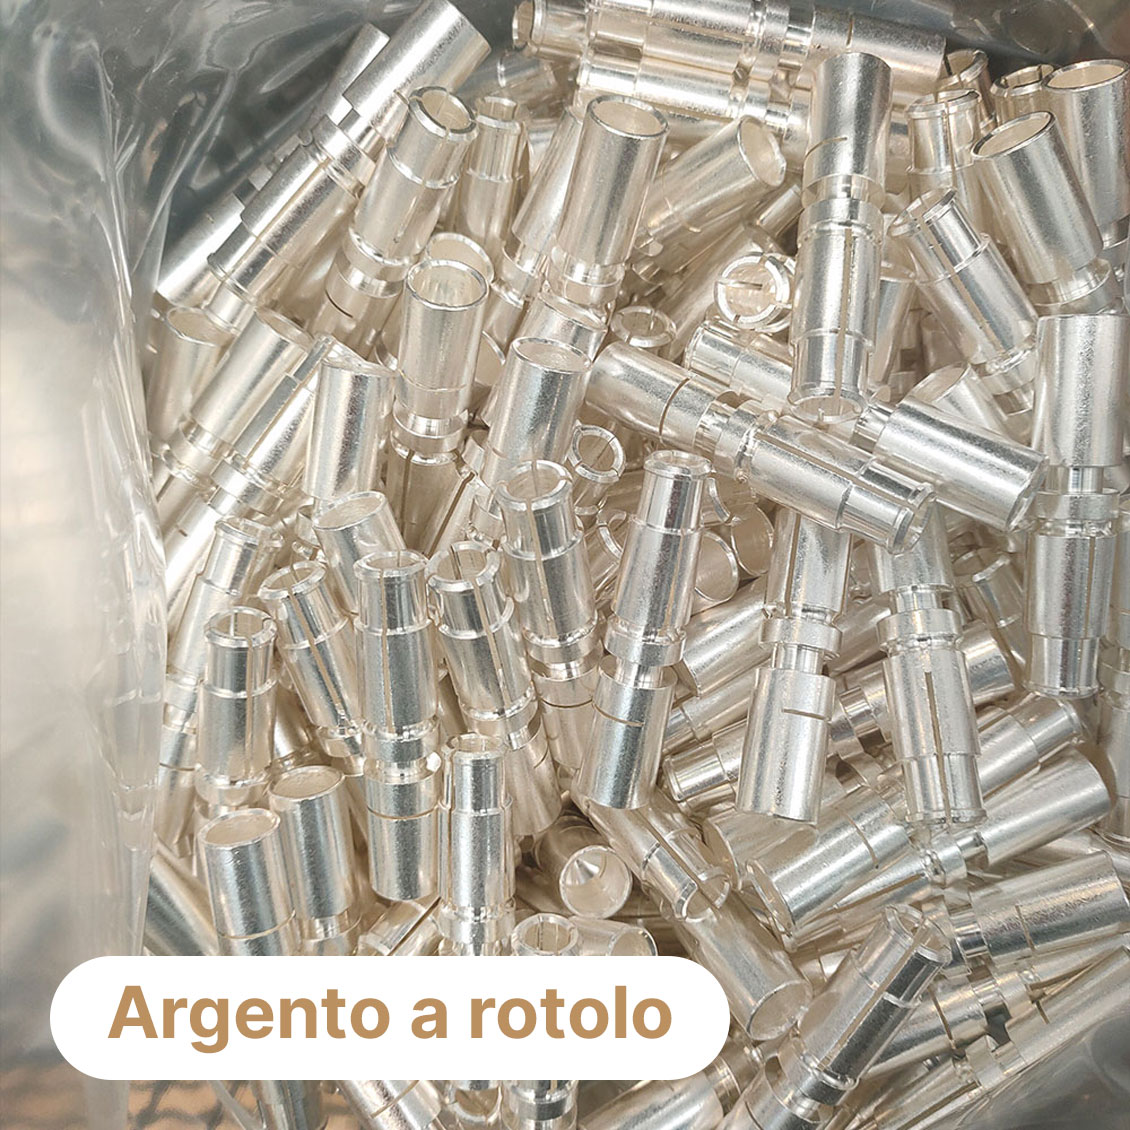 Argentatura - Trattamento galvanico di argentatura - argento a rotolo